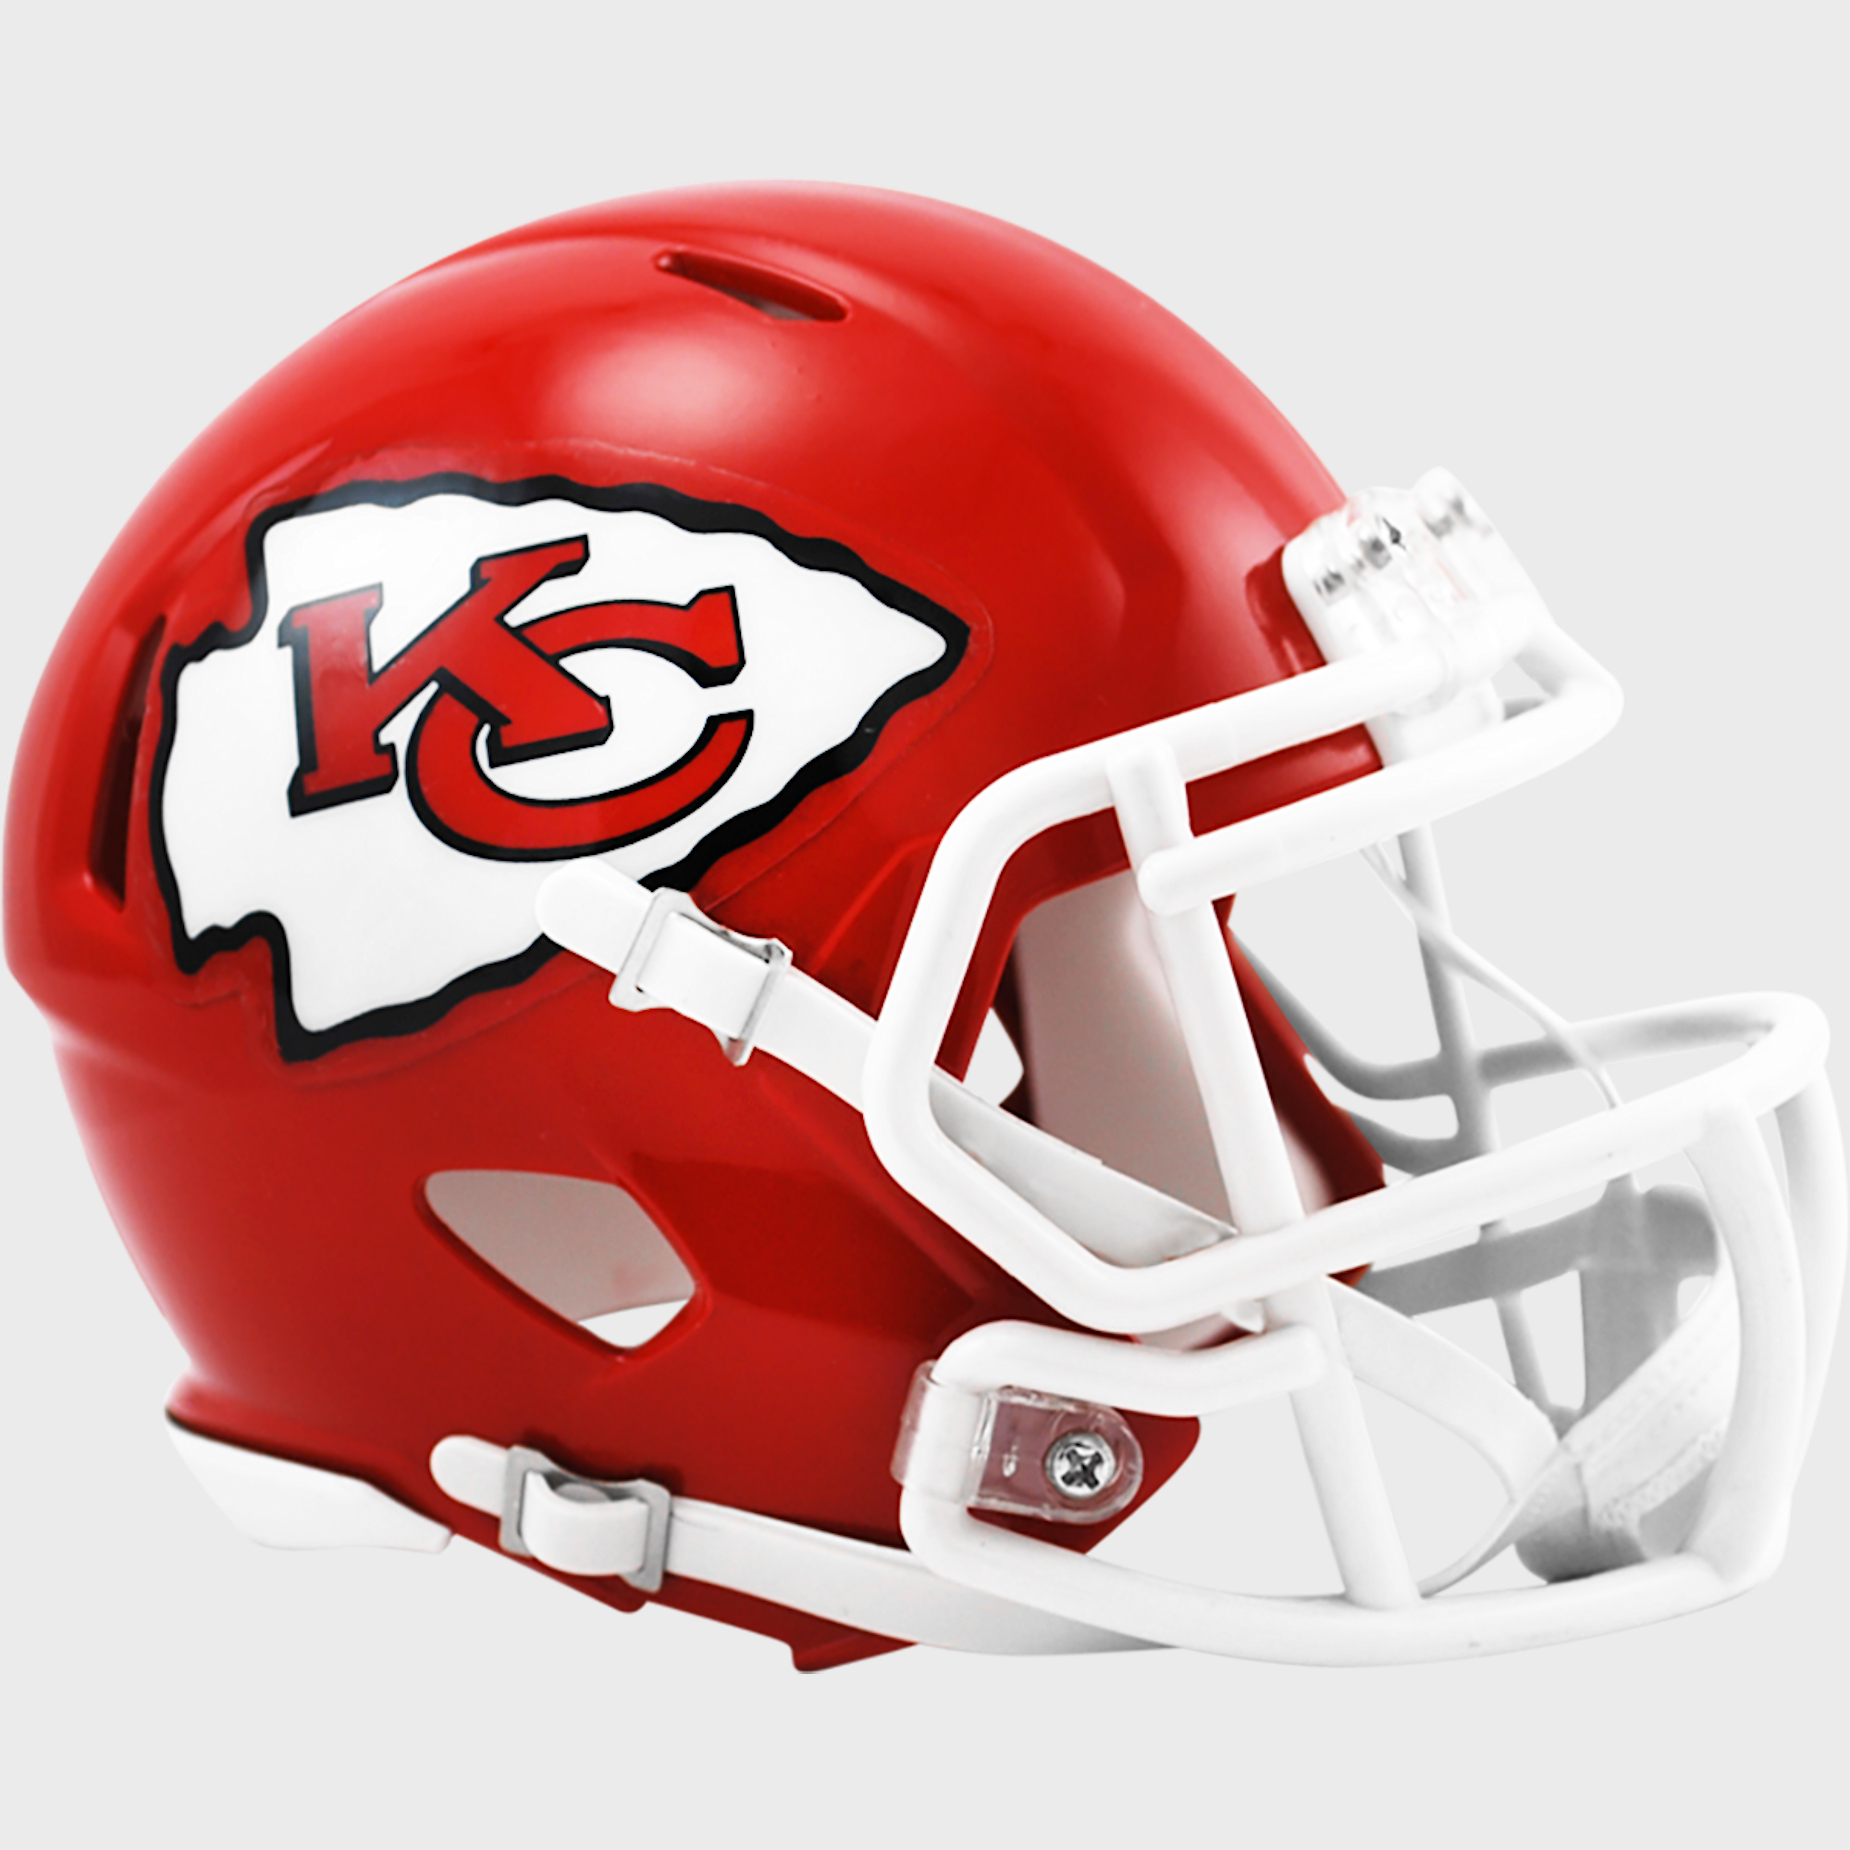 Kansas City Chiefs mini helmet